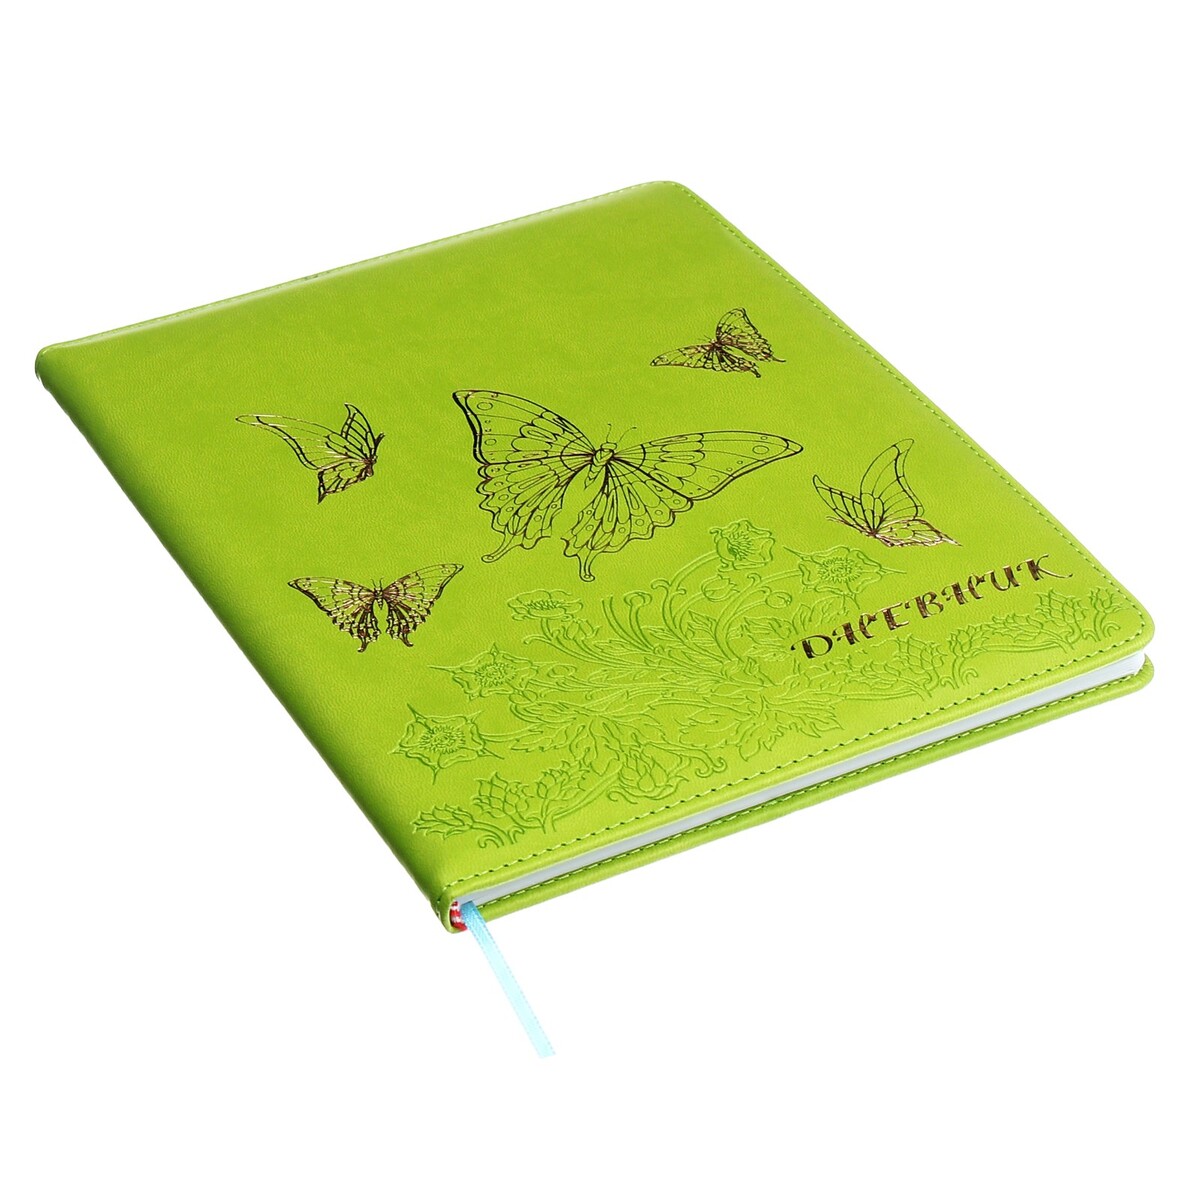 Дневник школьный, 5-11 класс, обложка пвх, бабочки, зеленый No brand 08209051 - фото 2